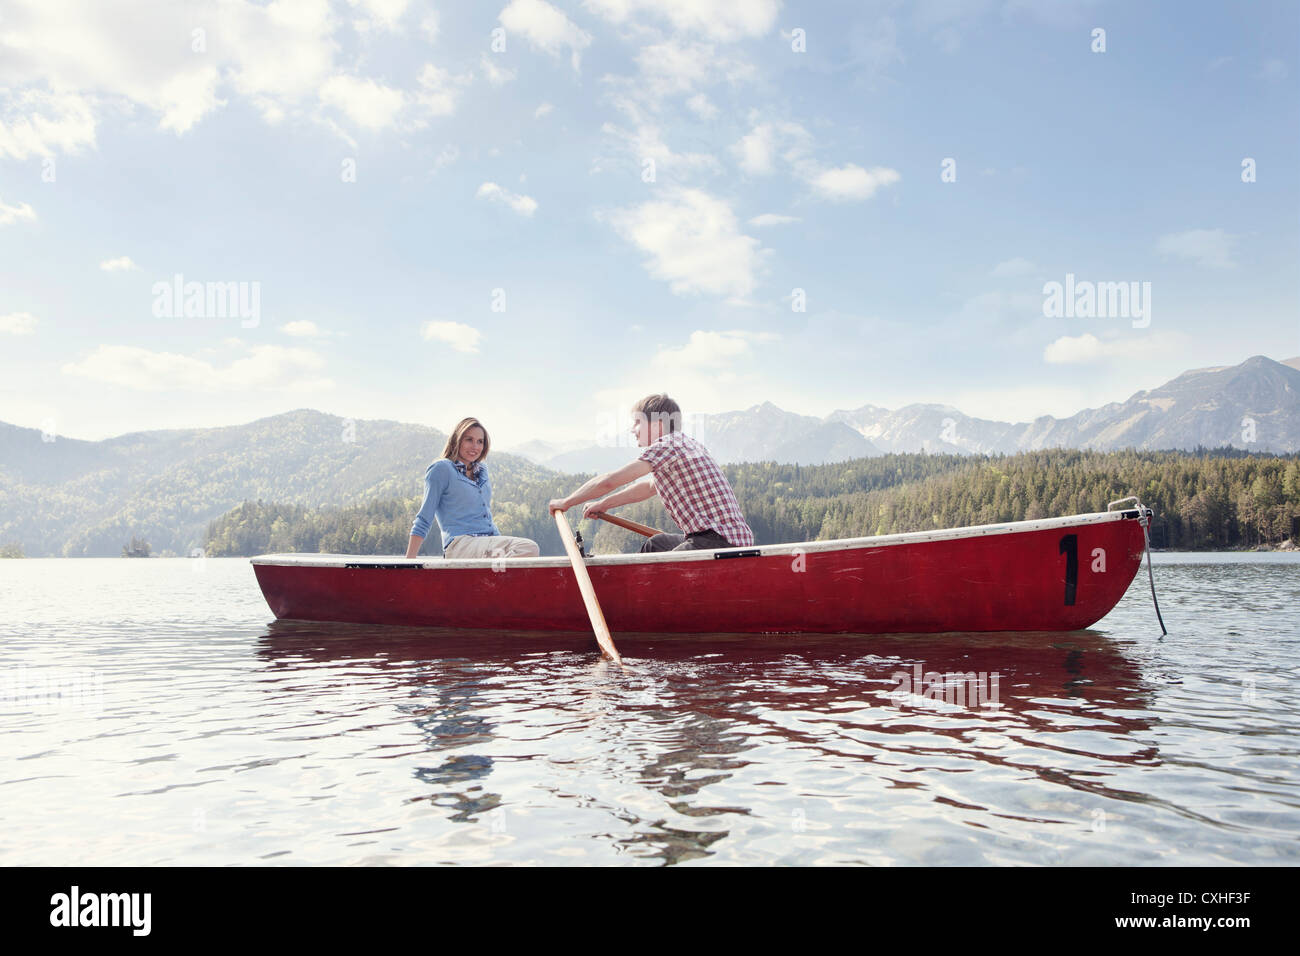 Alemania, Baviera, pareja en bote a remo, sonriendo Foto de stock